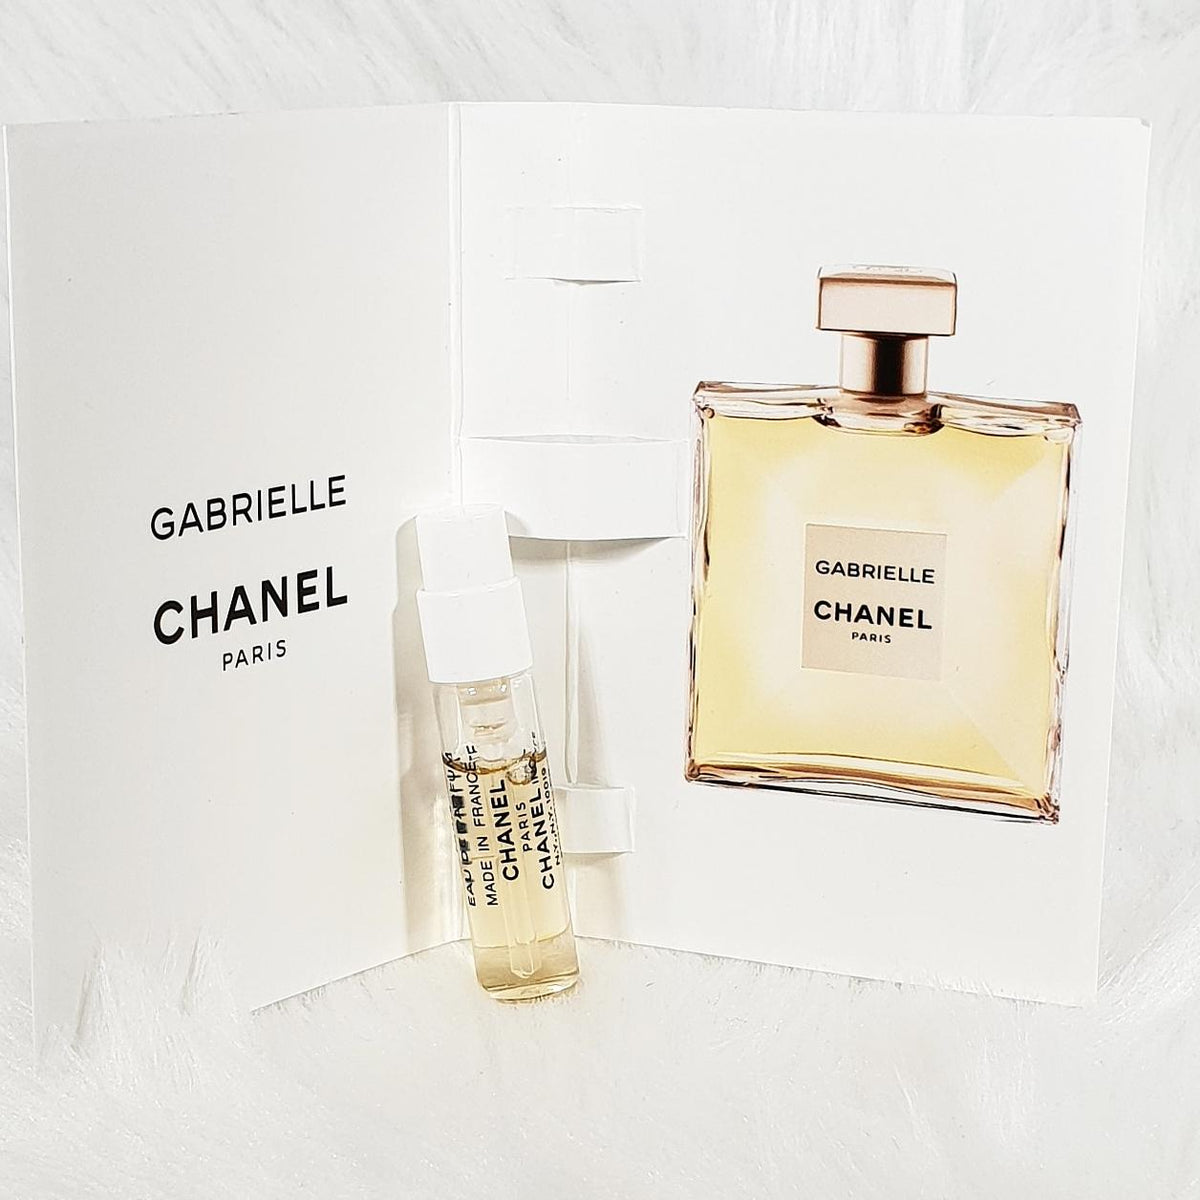 New Chanel Gabrielle Essence Eau De Parfum Travel Size 1.5ml